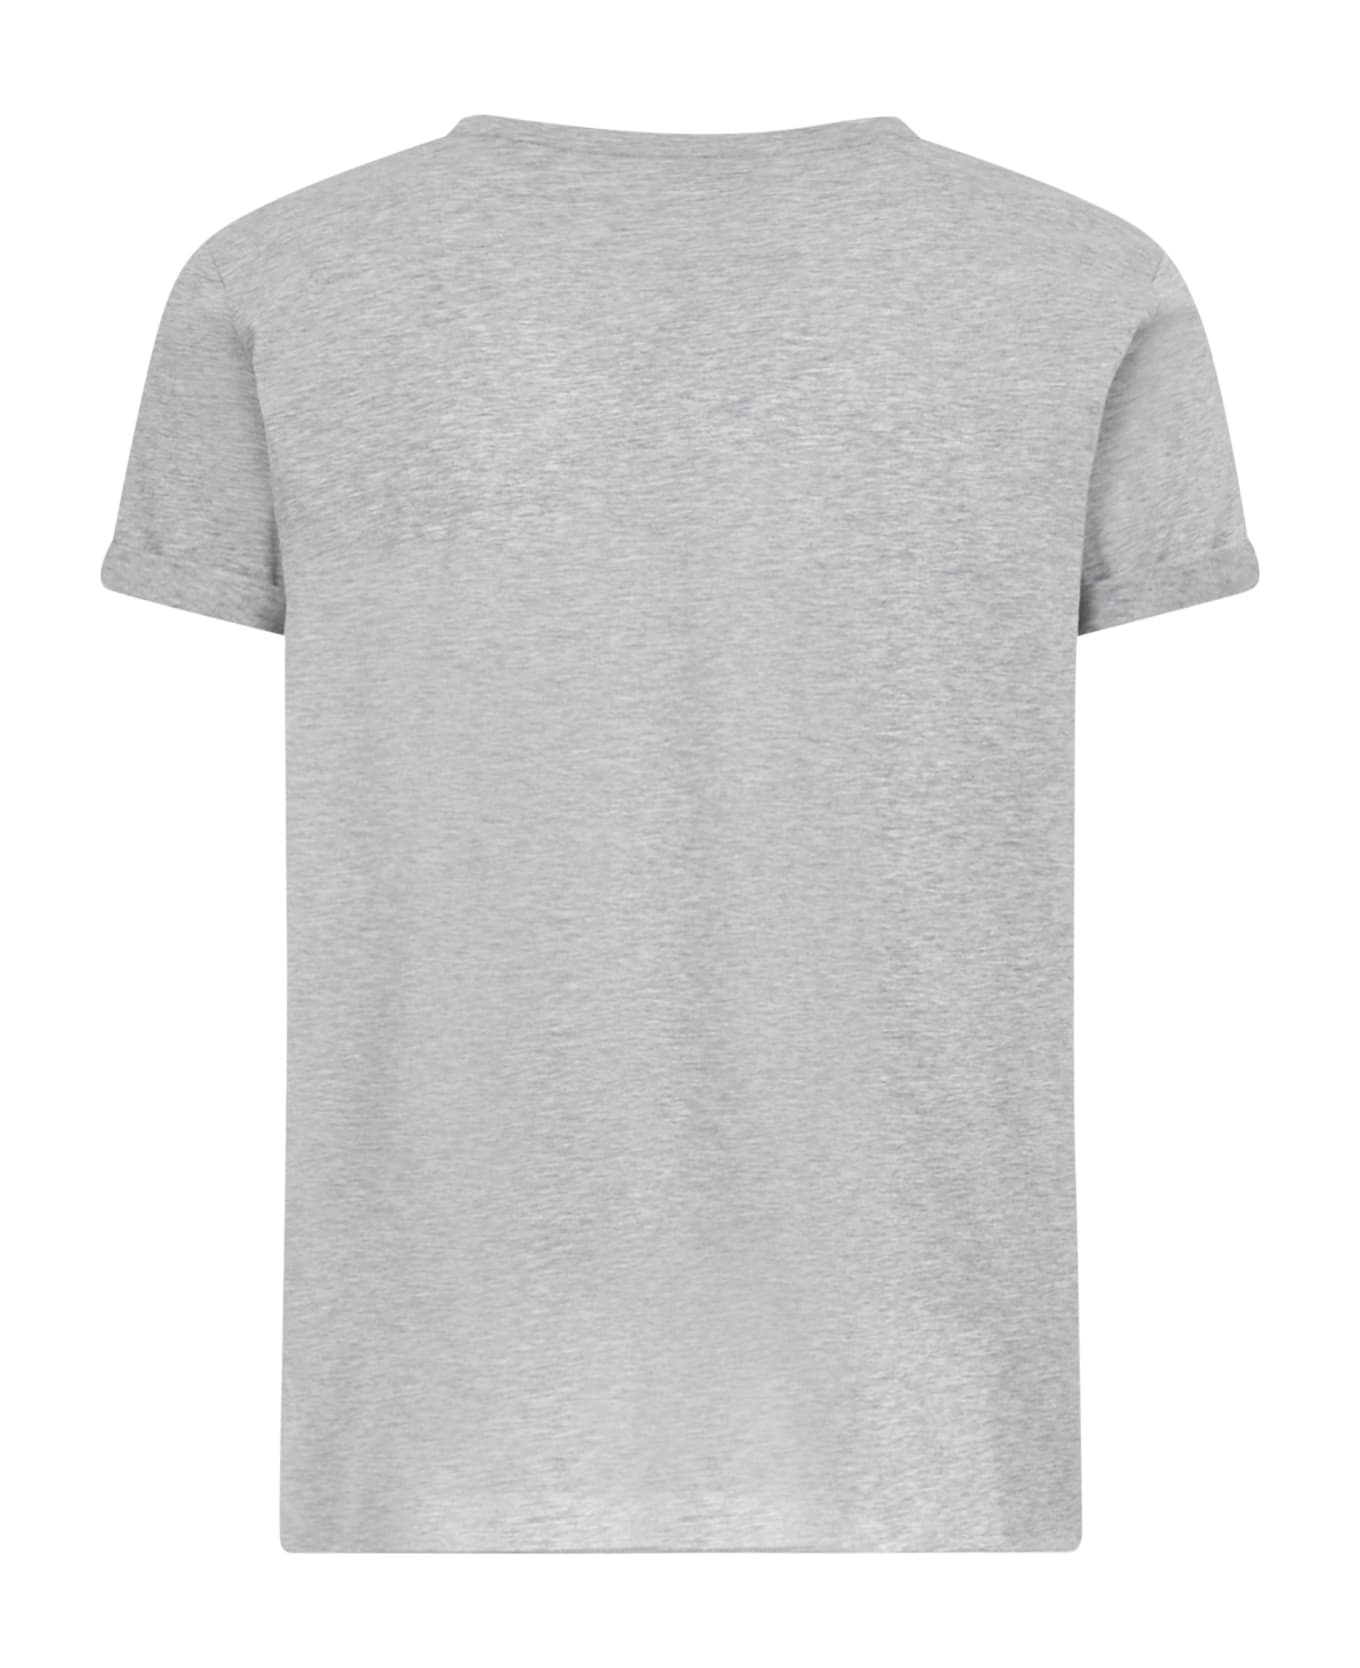 Saint Laurent T-shirt - Grey